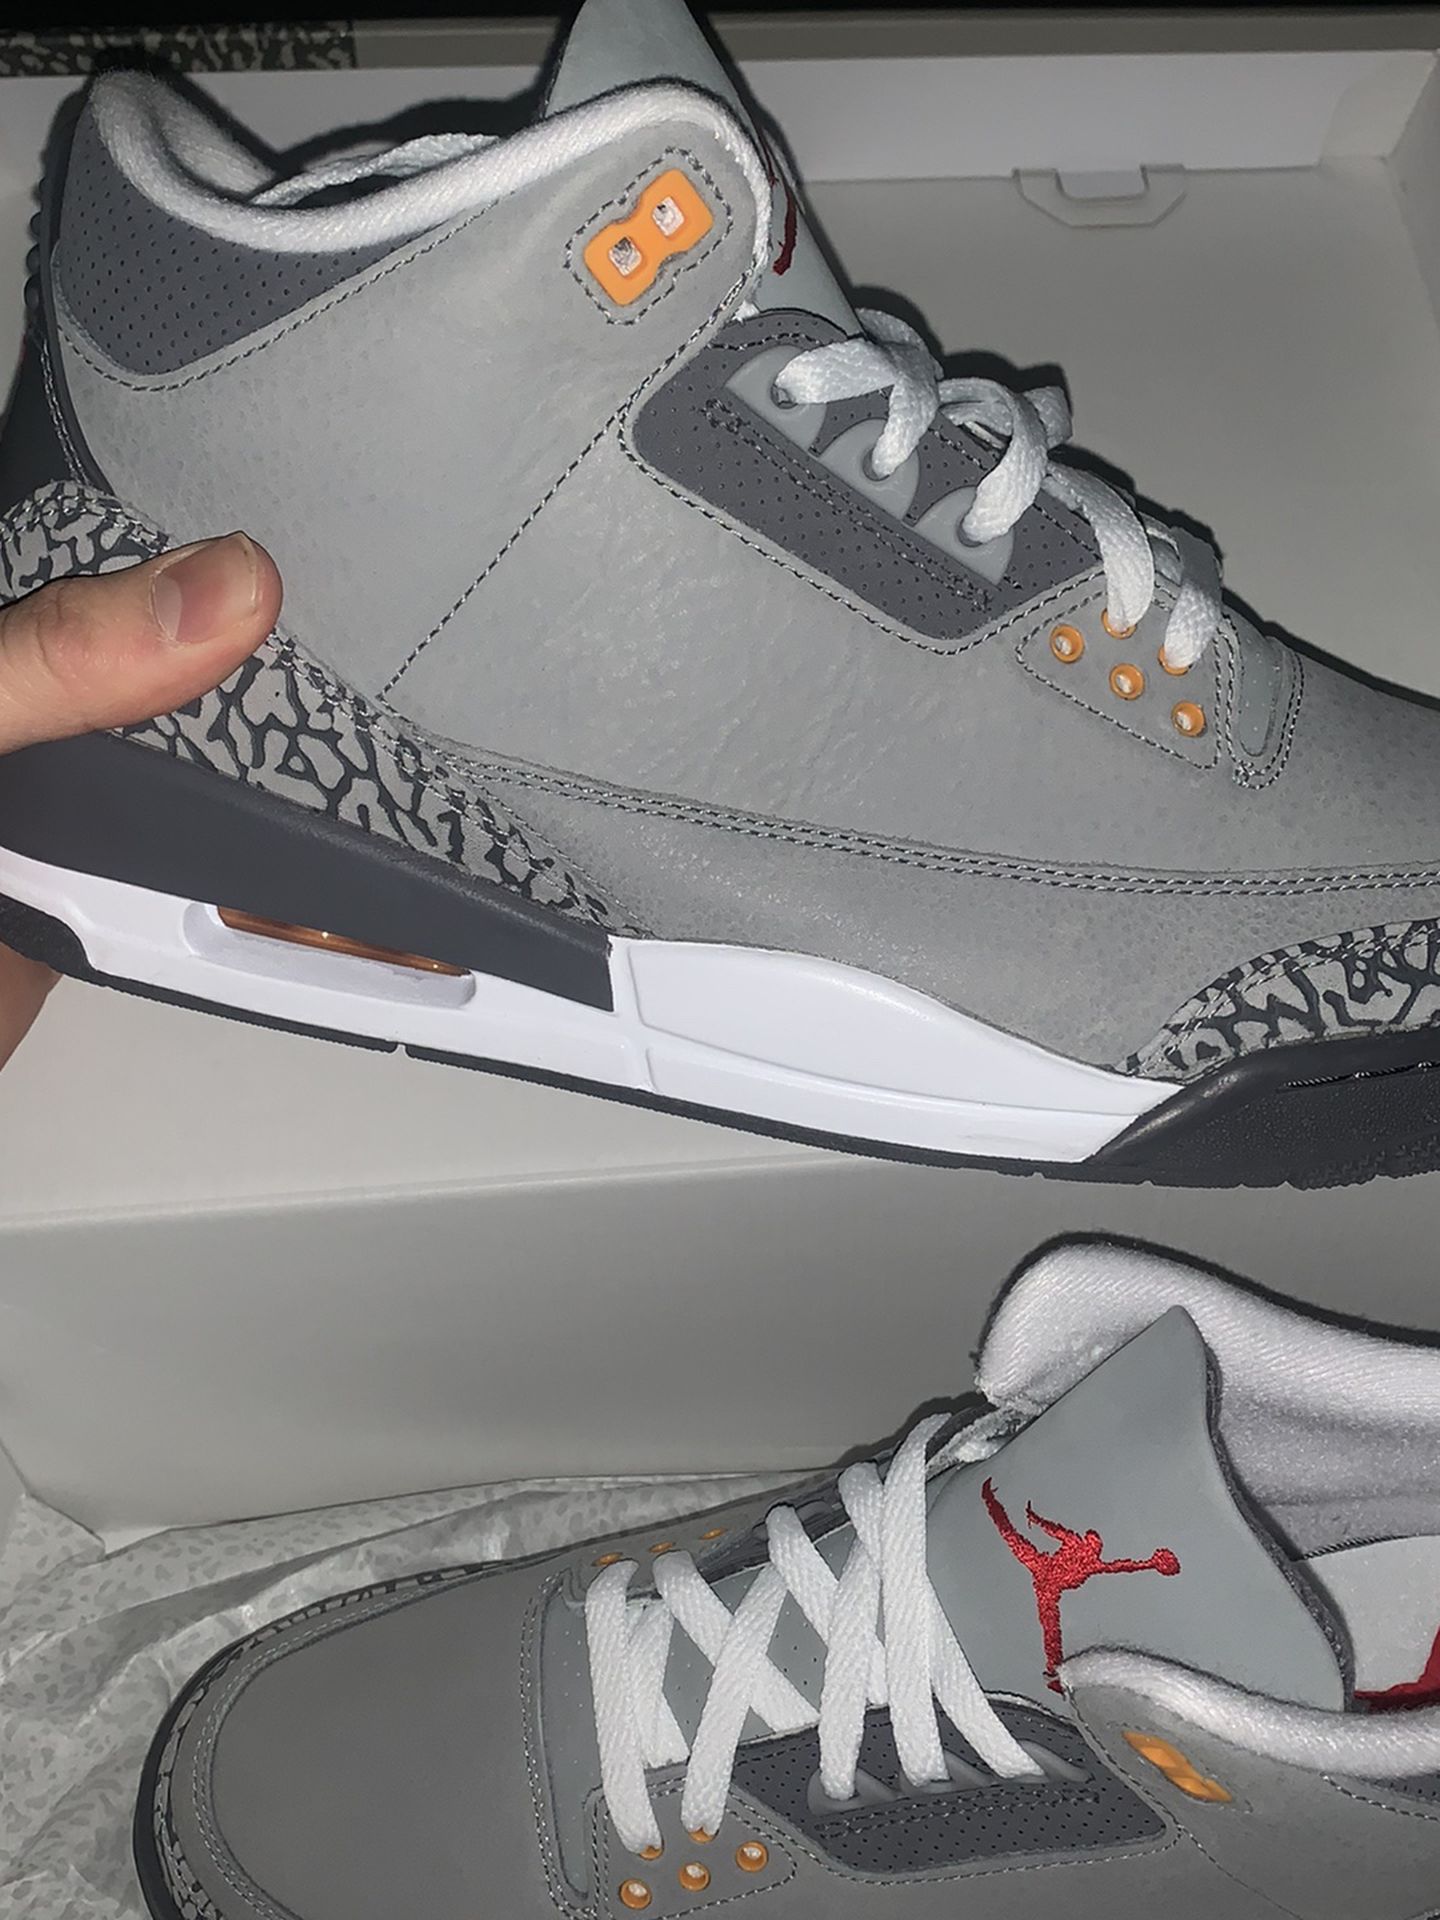 Jordan 3 Wolf Grey size 11